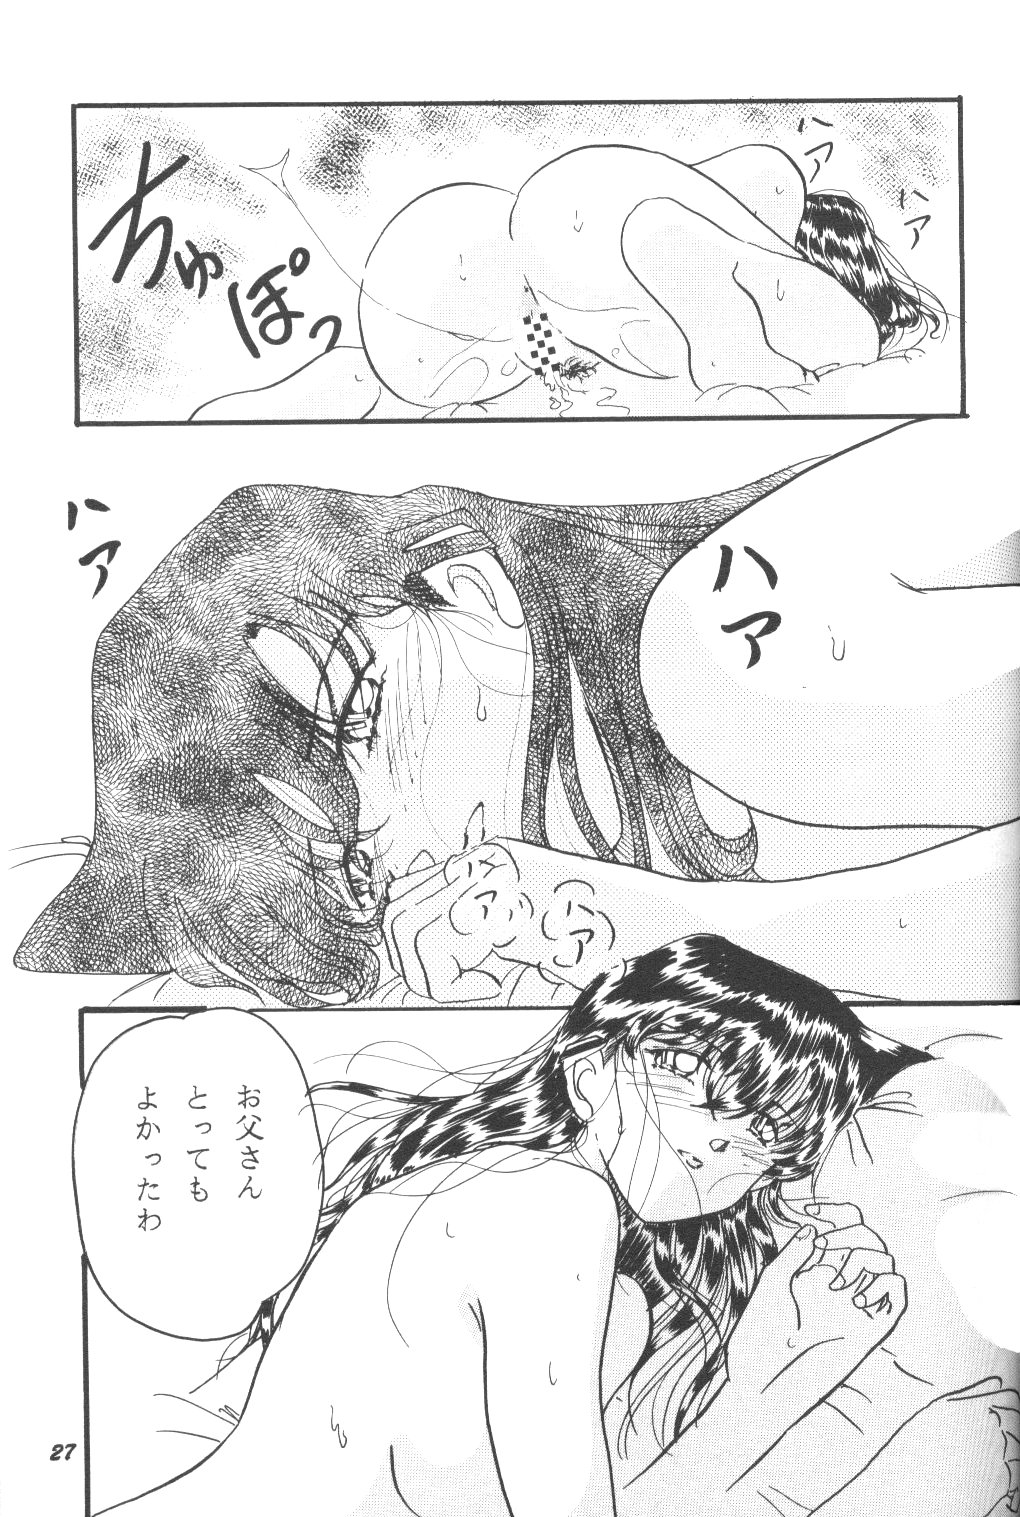 [Studio Boxer (Shima Takashi, Taka)] HOHETO 23 (Detective Conan) page 26 full